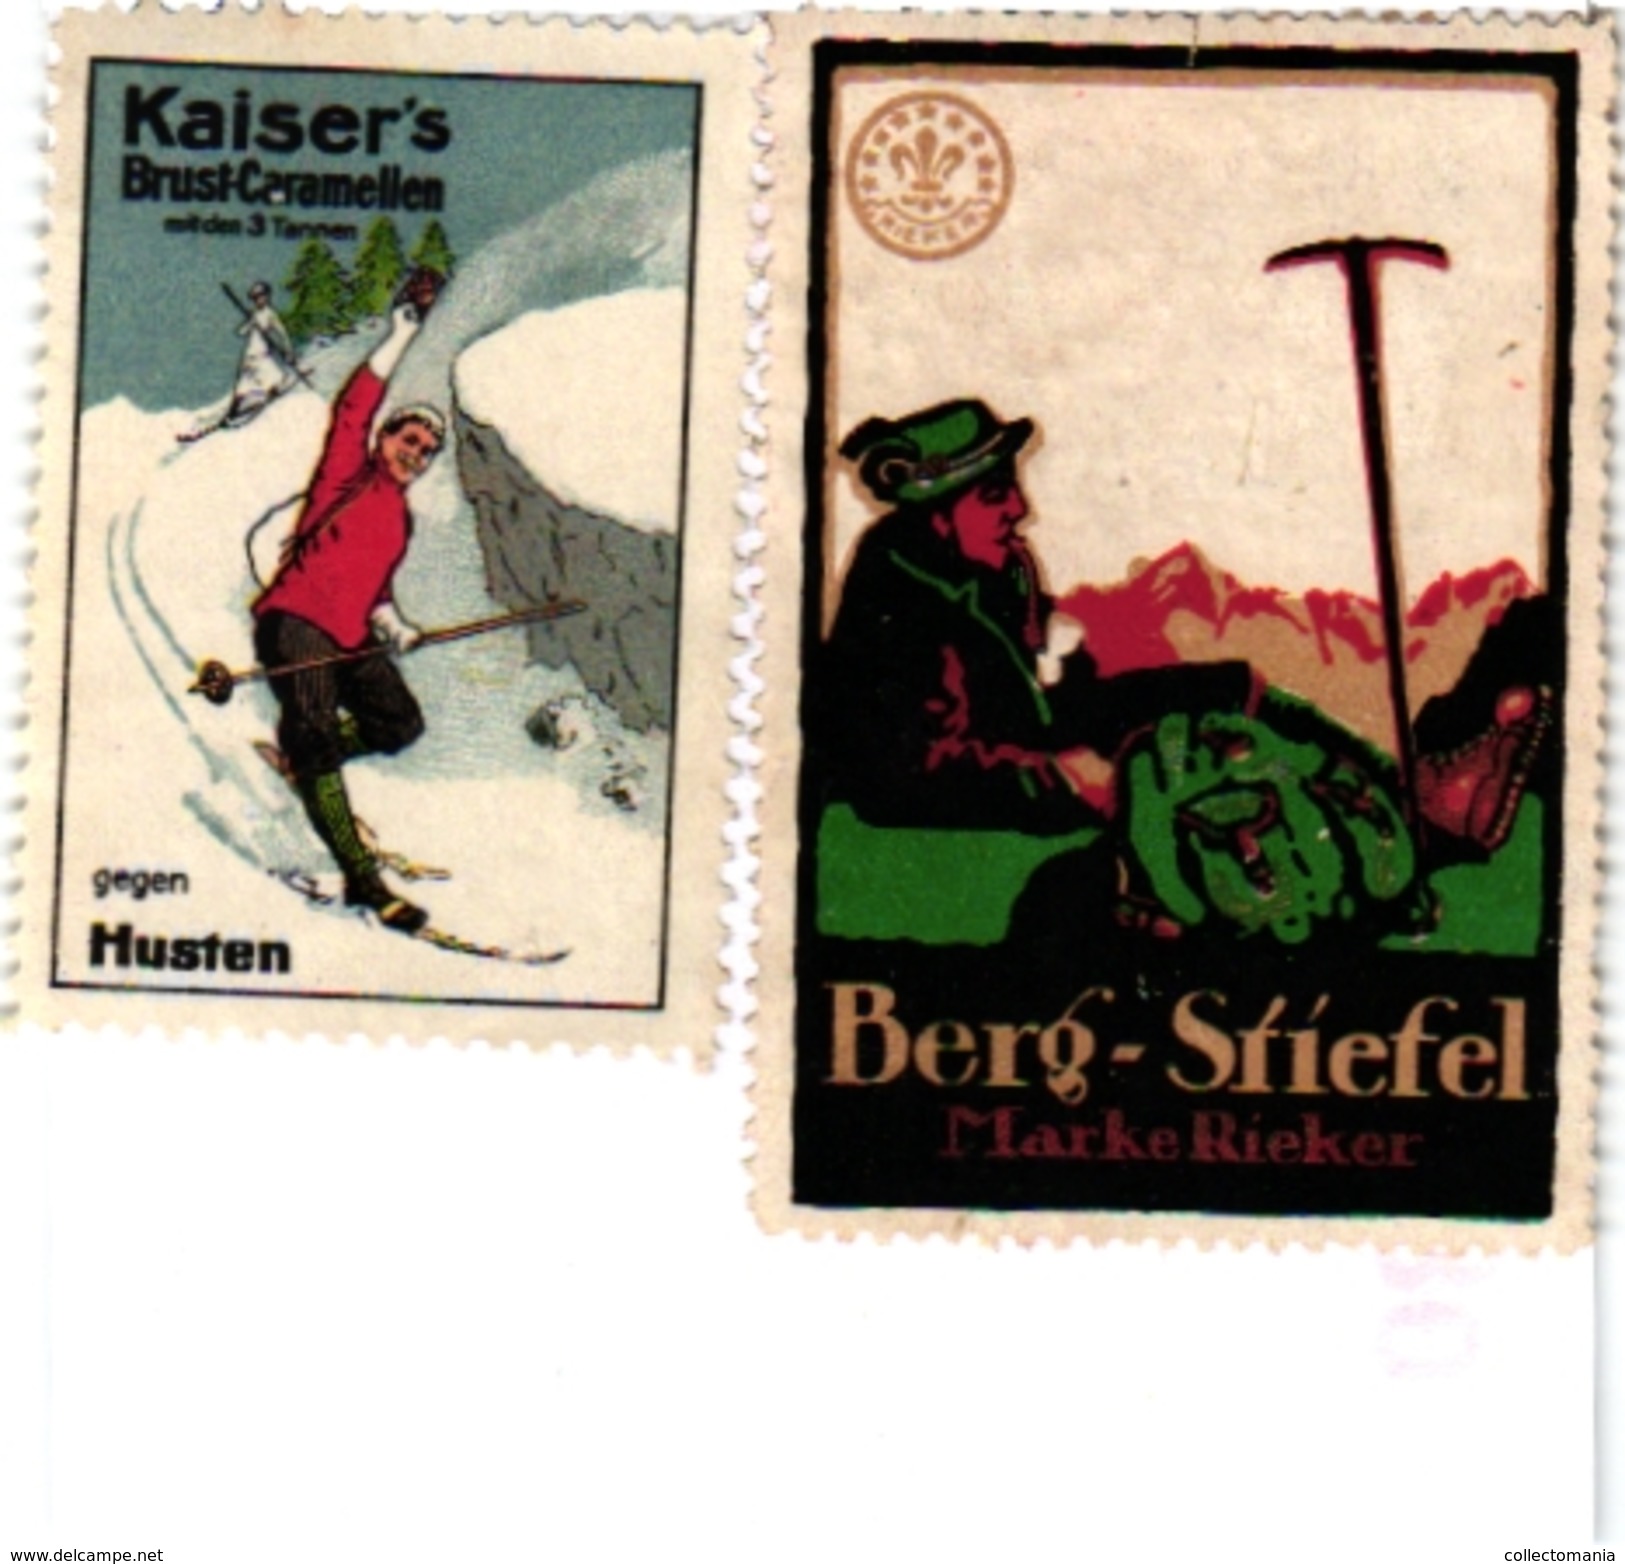 8 Poster Stamp Cinderella Reklame Marke Pub  ALPINISME Mountaineering Skiing Montagne =gebirgte Berg Climbing Klimmen VG - Invierno